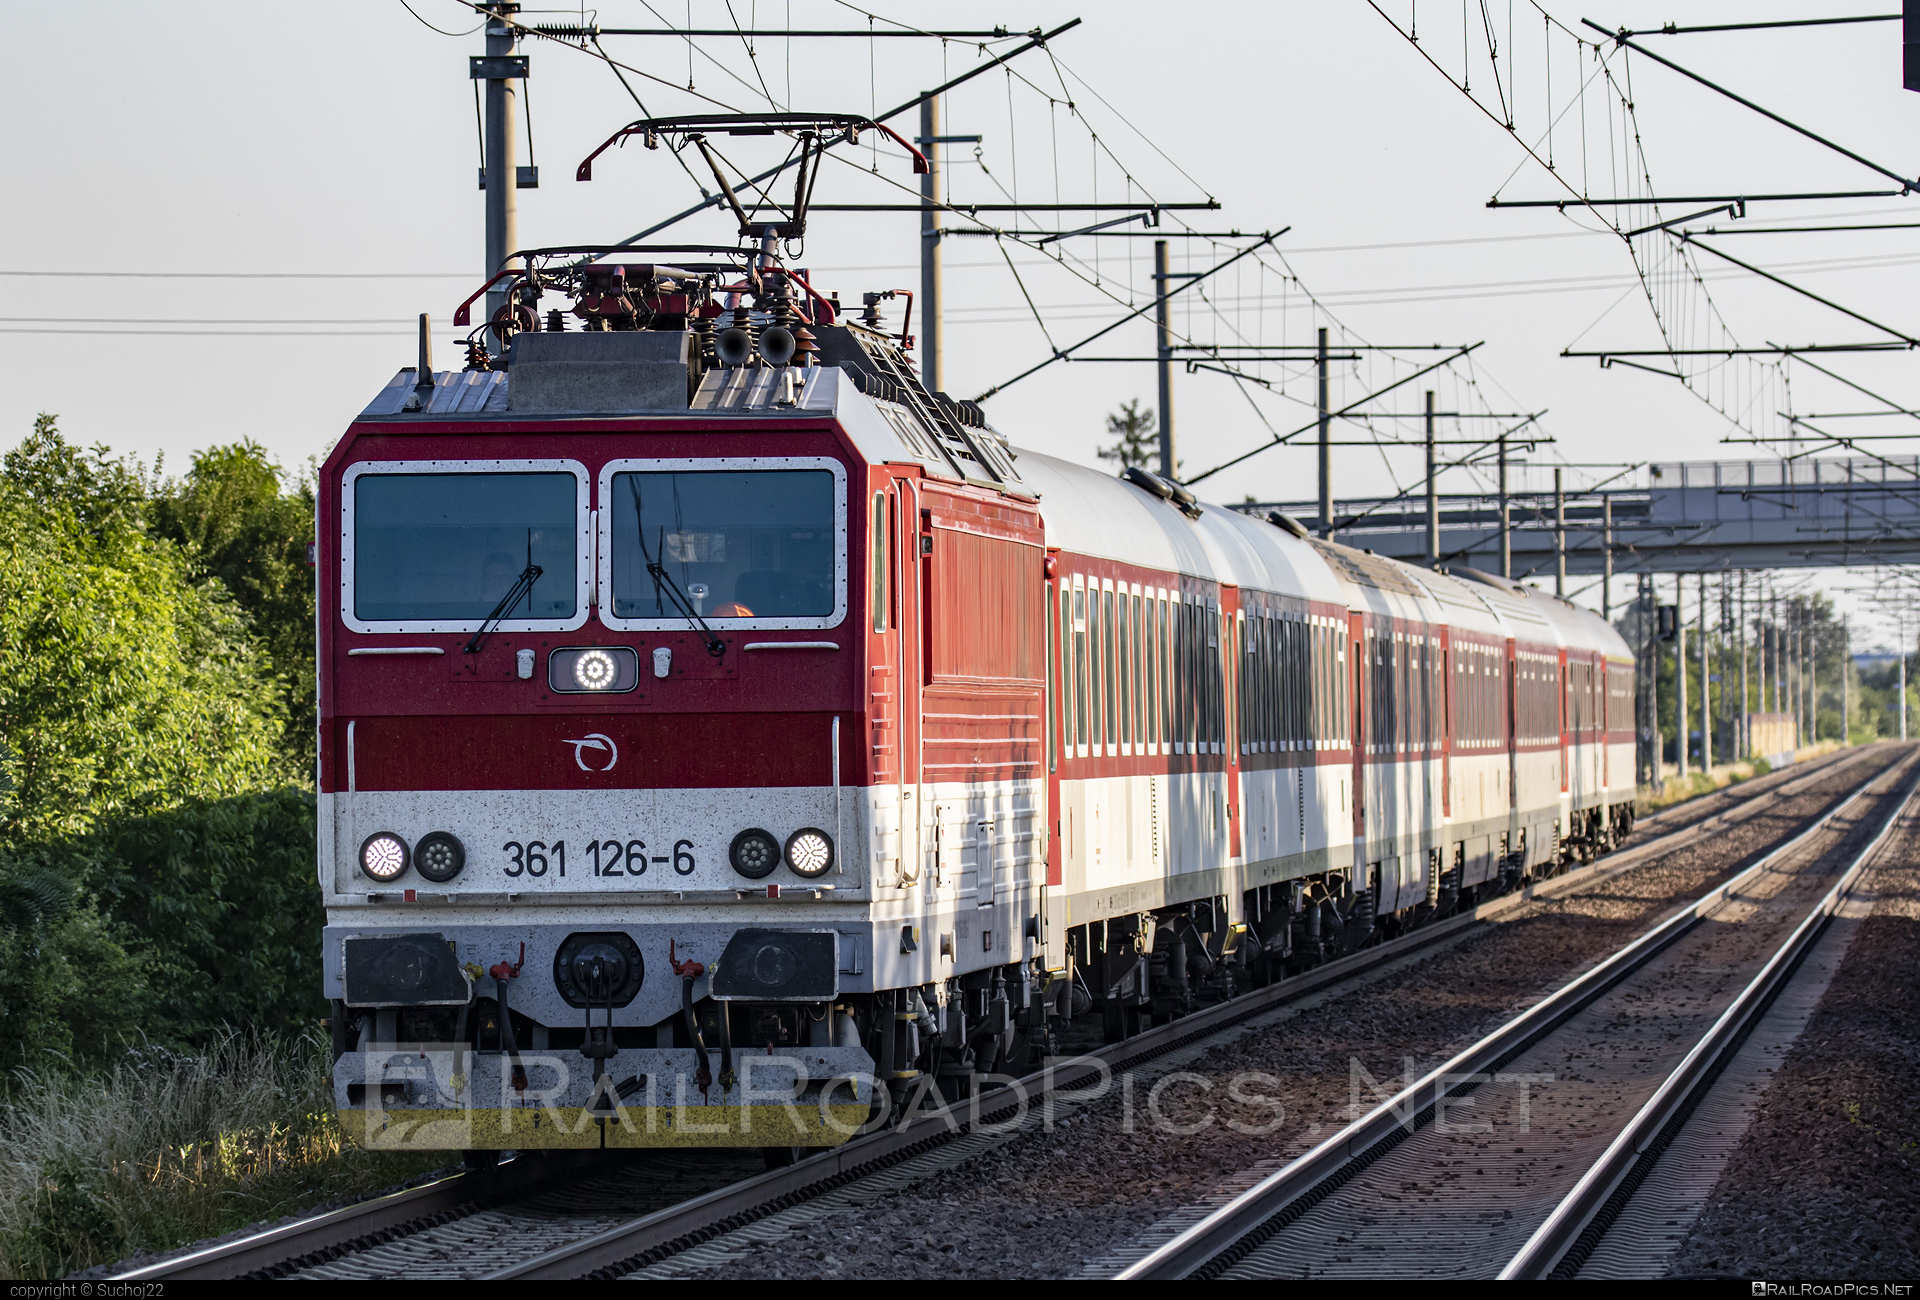 ŽOS Vrútky Class 361.1 - 361 126-6 operated by Železničná Spoločnost' Slovensko, a.s. #ZeleznicnaSpolocnostSlovensko #locomotive361 #locomotive3611 #zosvrutky #zssk